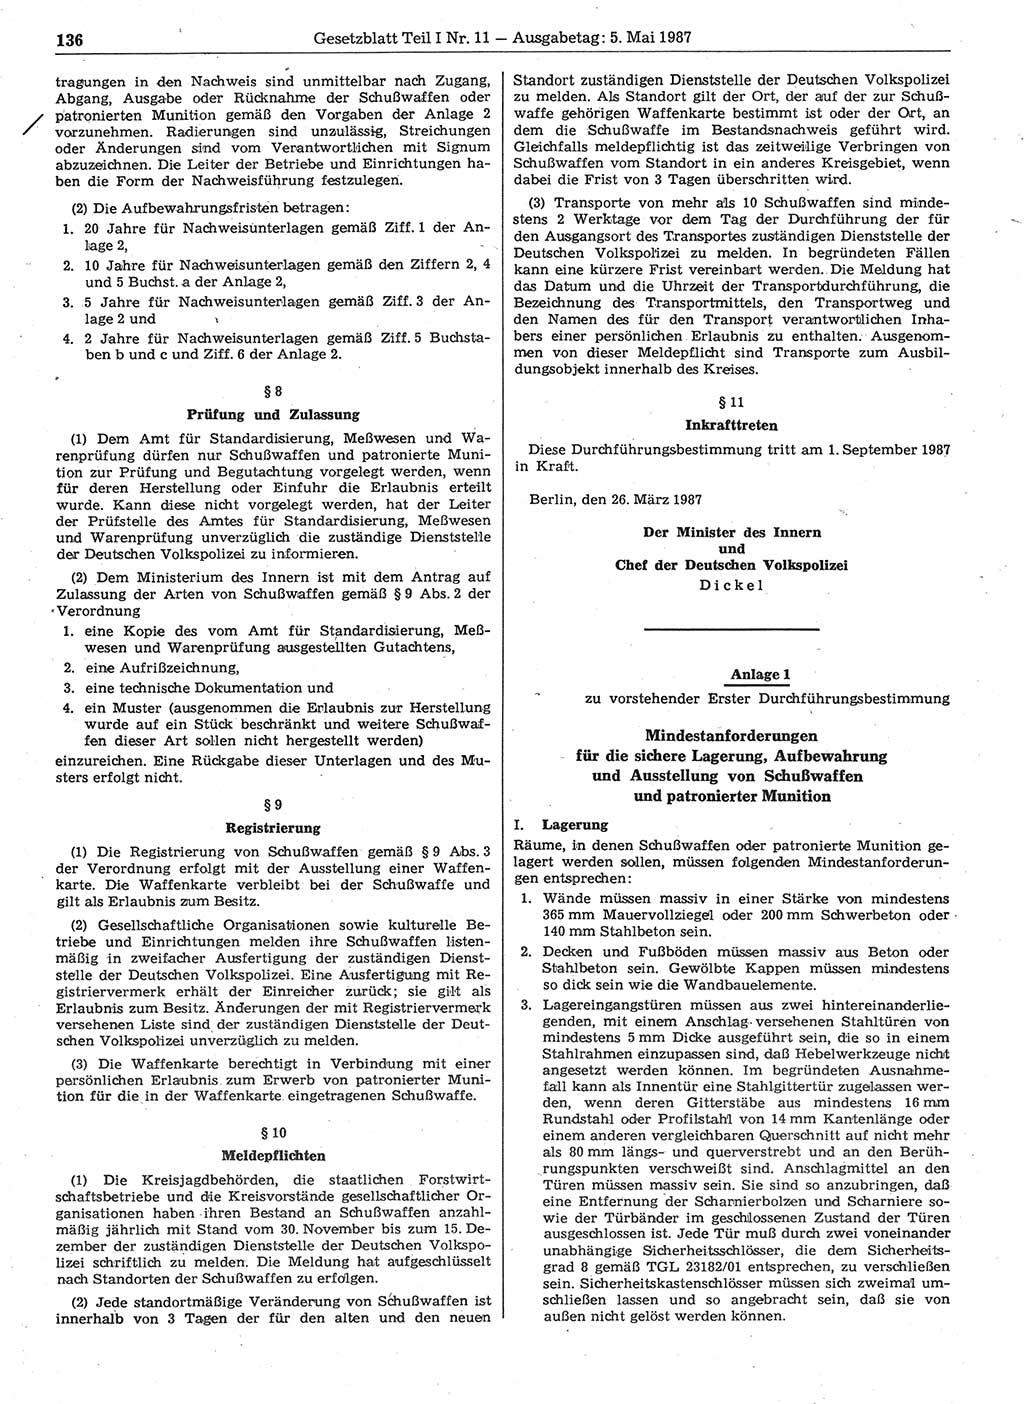 Gesetzblatt (GBl.) der Deutschen Demokratischen Republik (DDR) Teil Ⅰ 1987, Seite 136 (GBl. DDR Ⅰ 1987, S. 136)